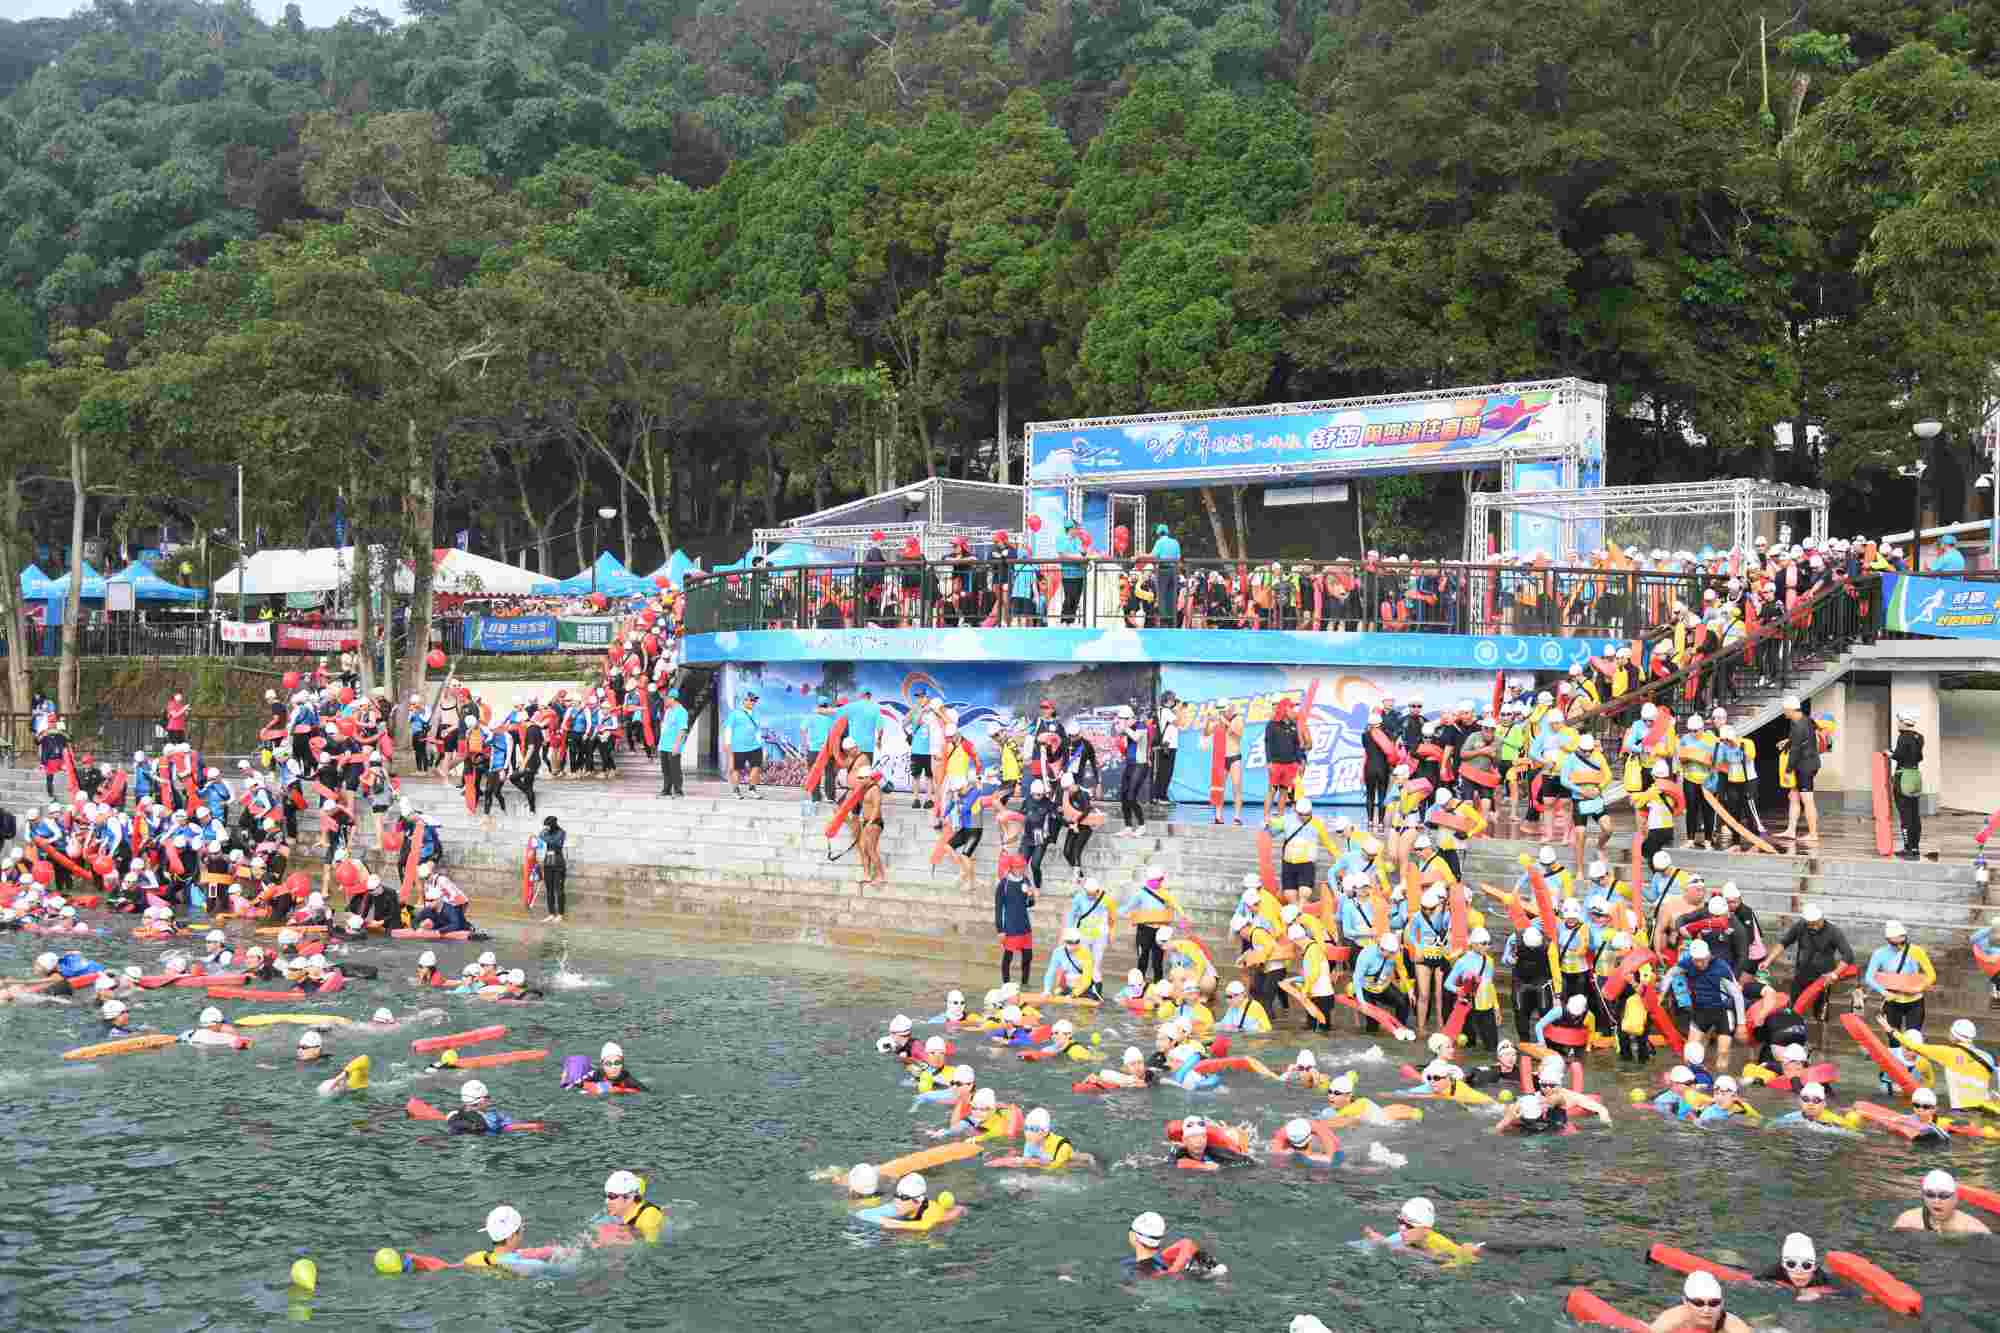 日月潭國際萬人泳渡活動 2萬4千多人下水挑戰